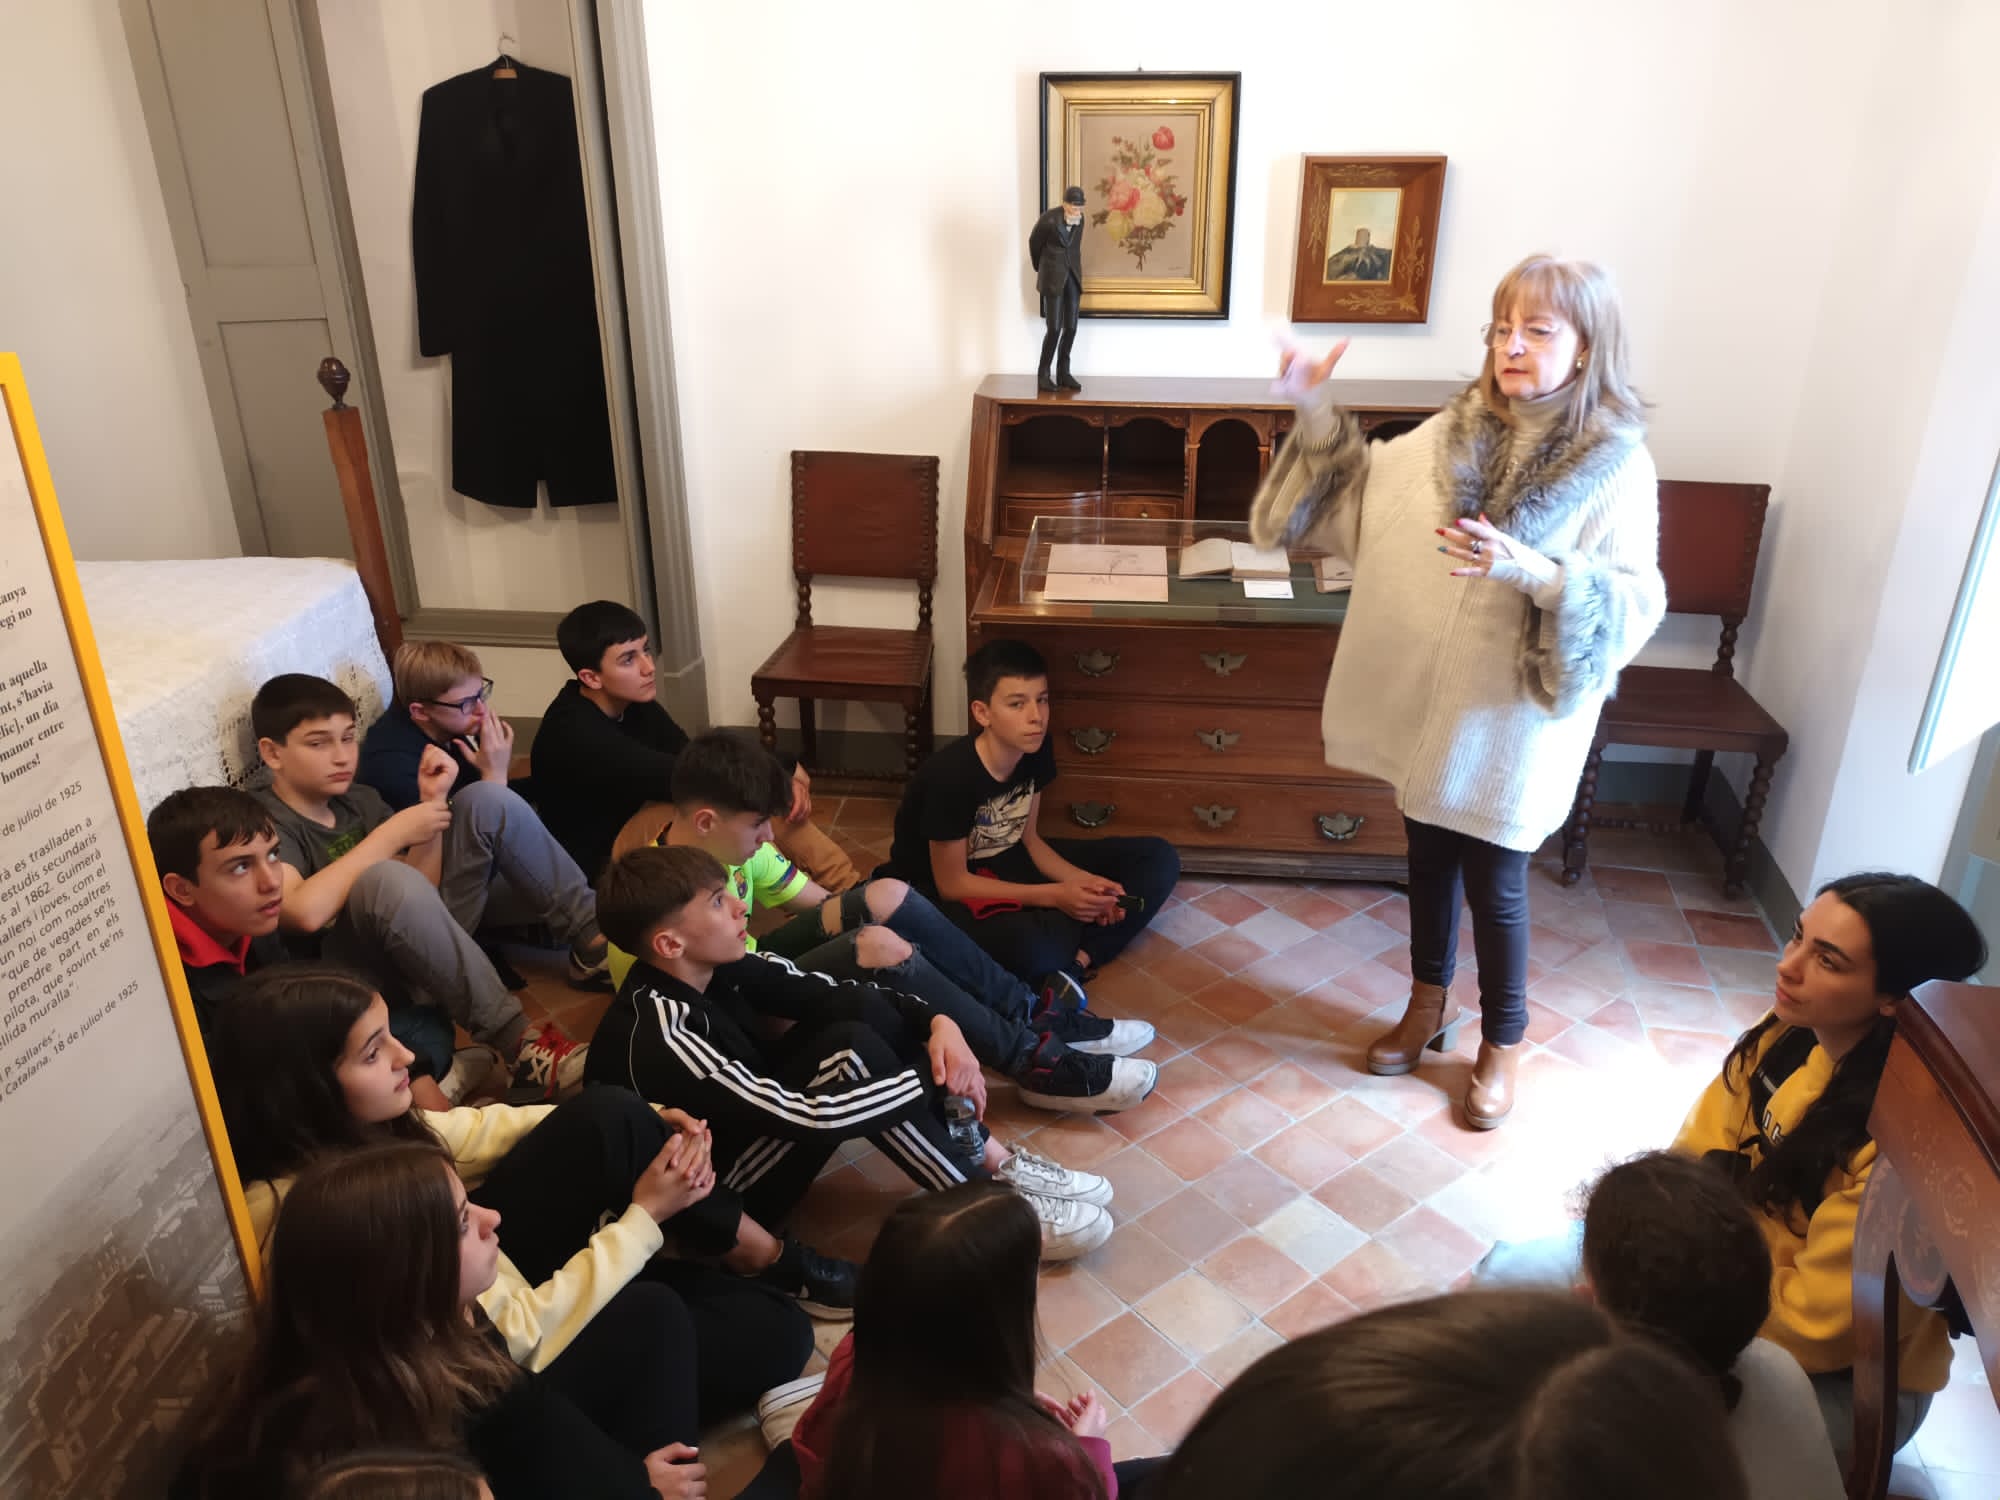 Carrussel d'imatges dels alumnes durant la visita a la Casa Museu d'Àngel Guimerà